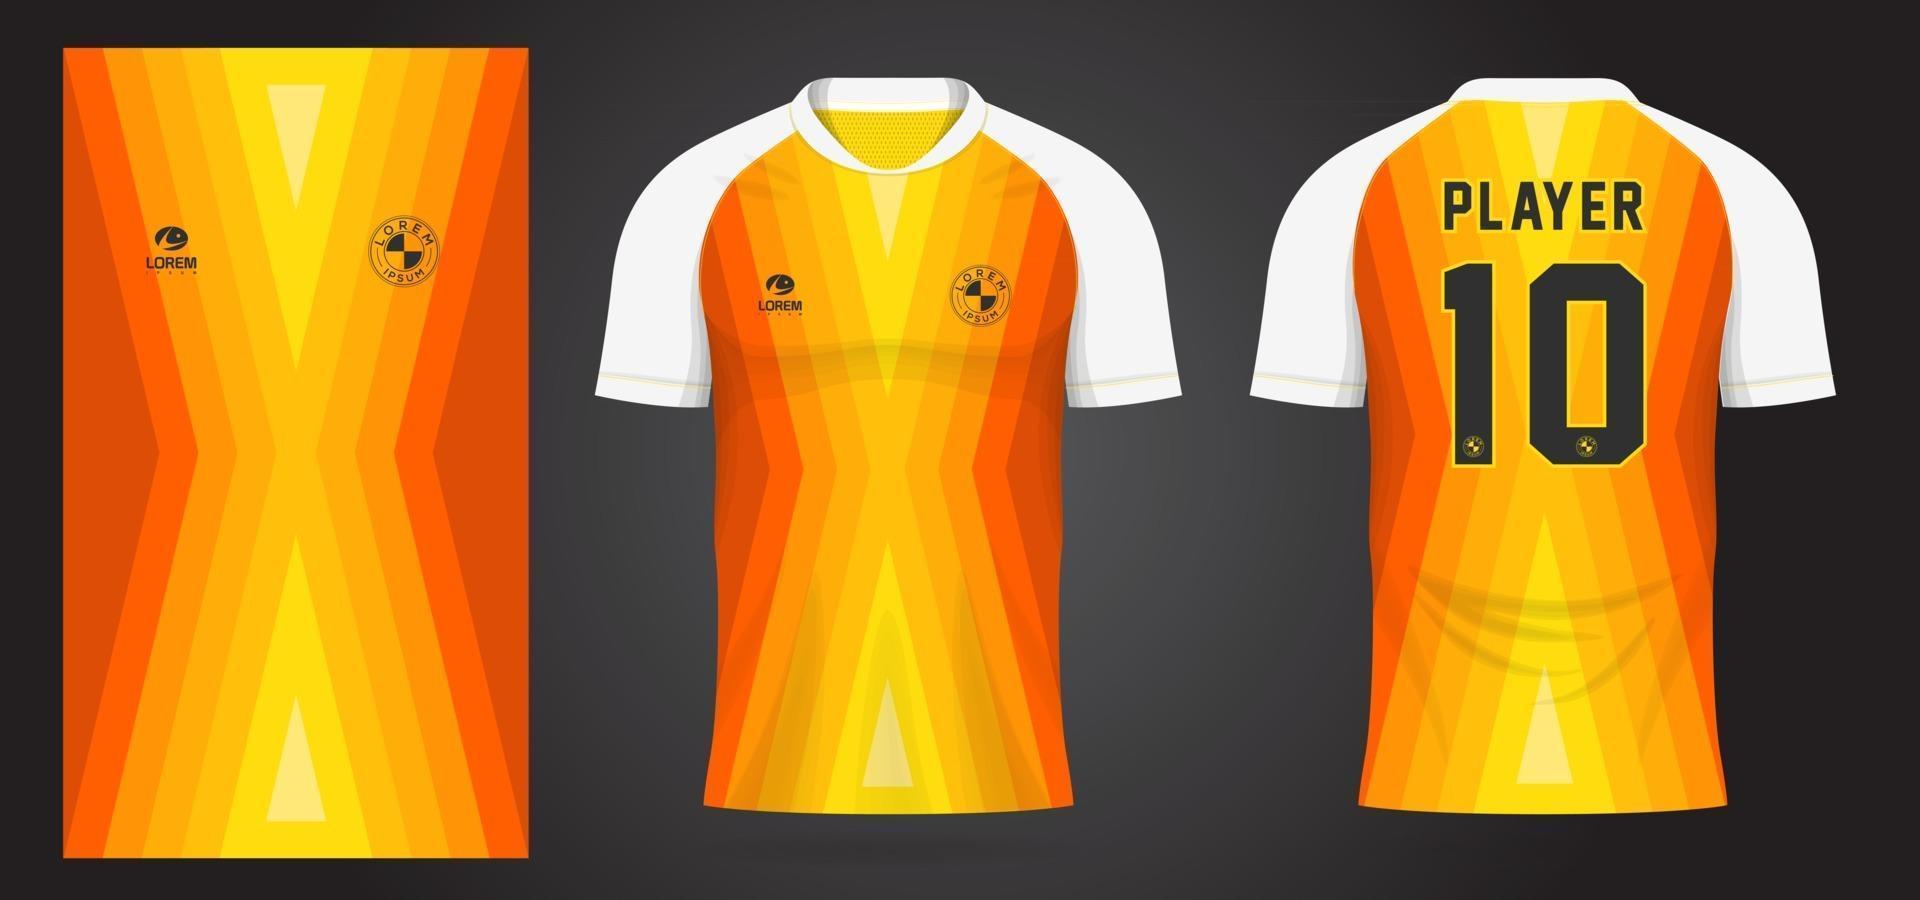 gelbe Sporttrikotschablone für Mannschaftsuniformen und Fußballt-shirt Design vektor